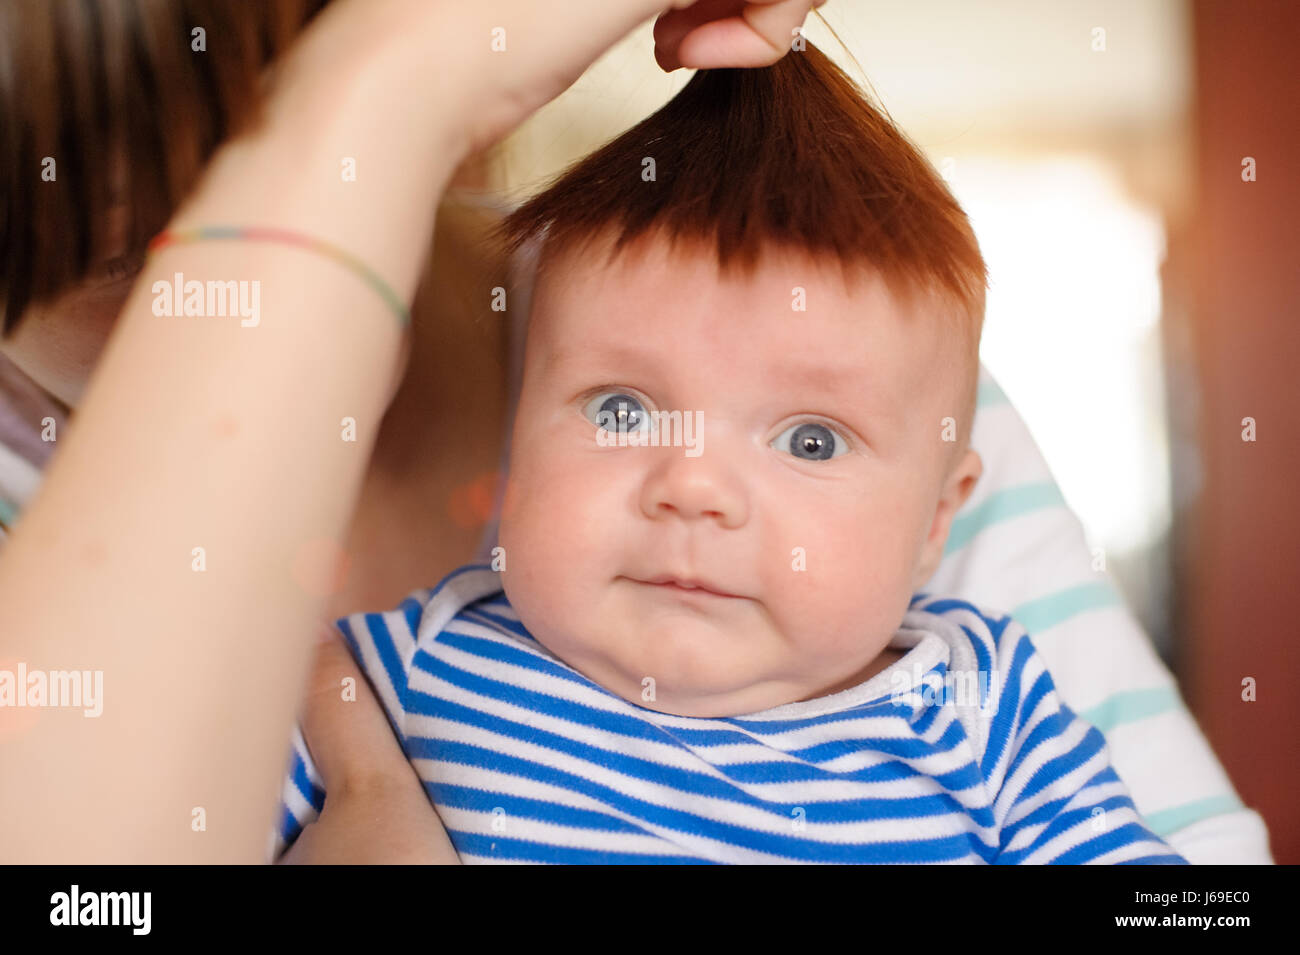 Maman propres cheveux attachés à la tête du nouveau-né et de s'amuser Banque D'Images